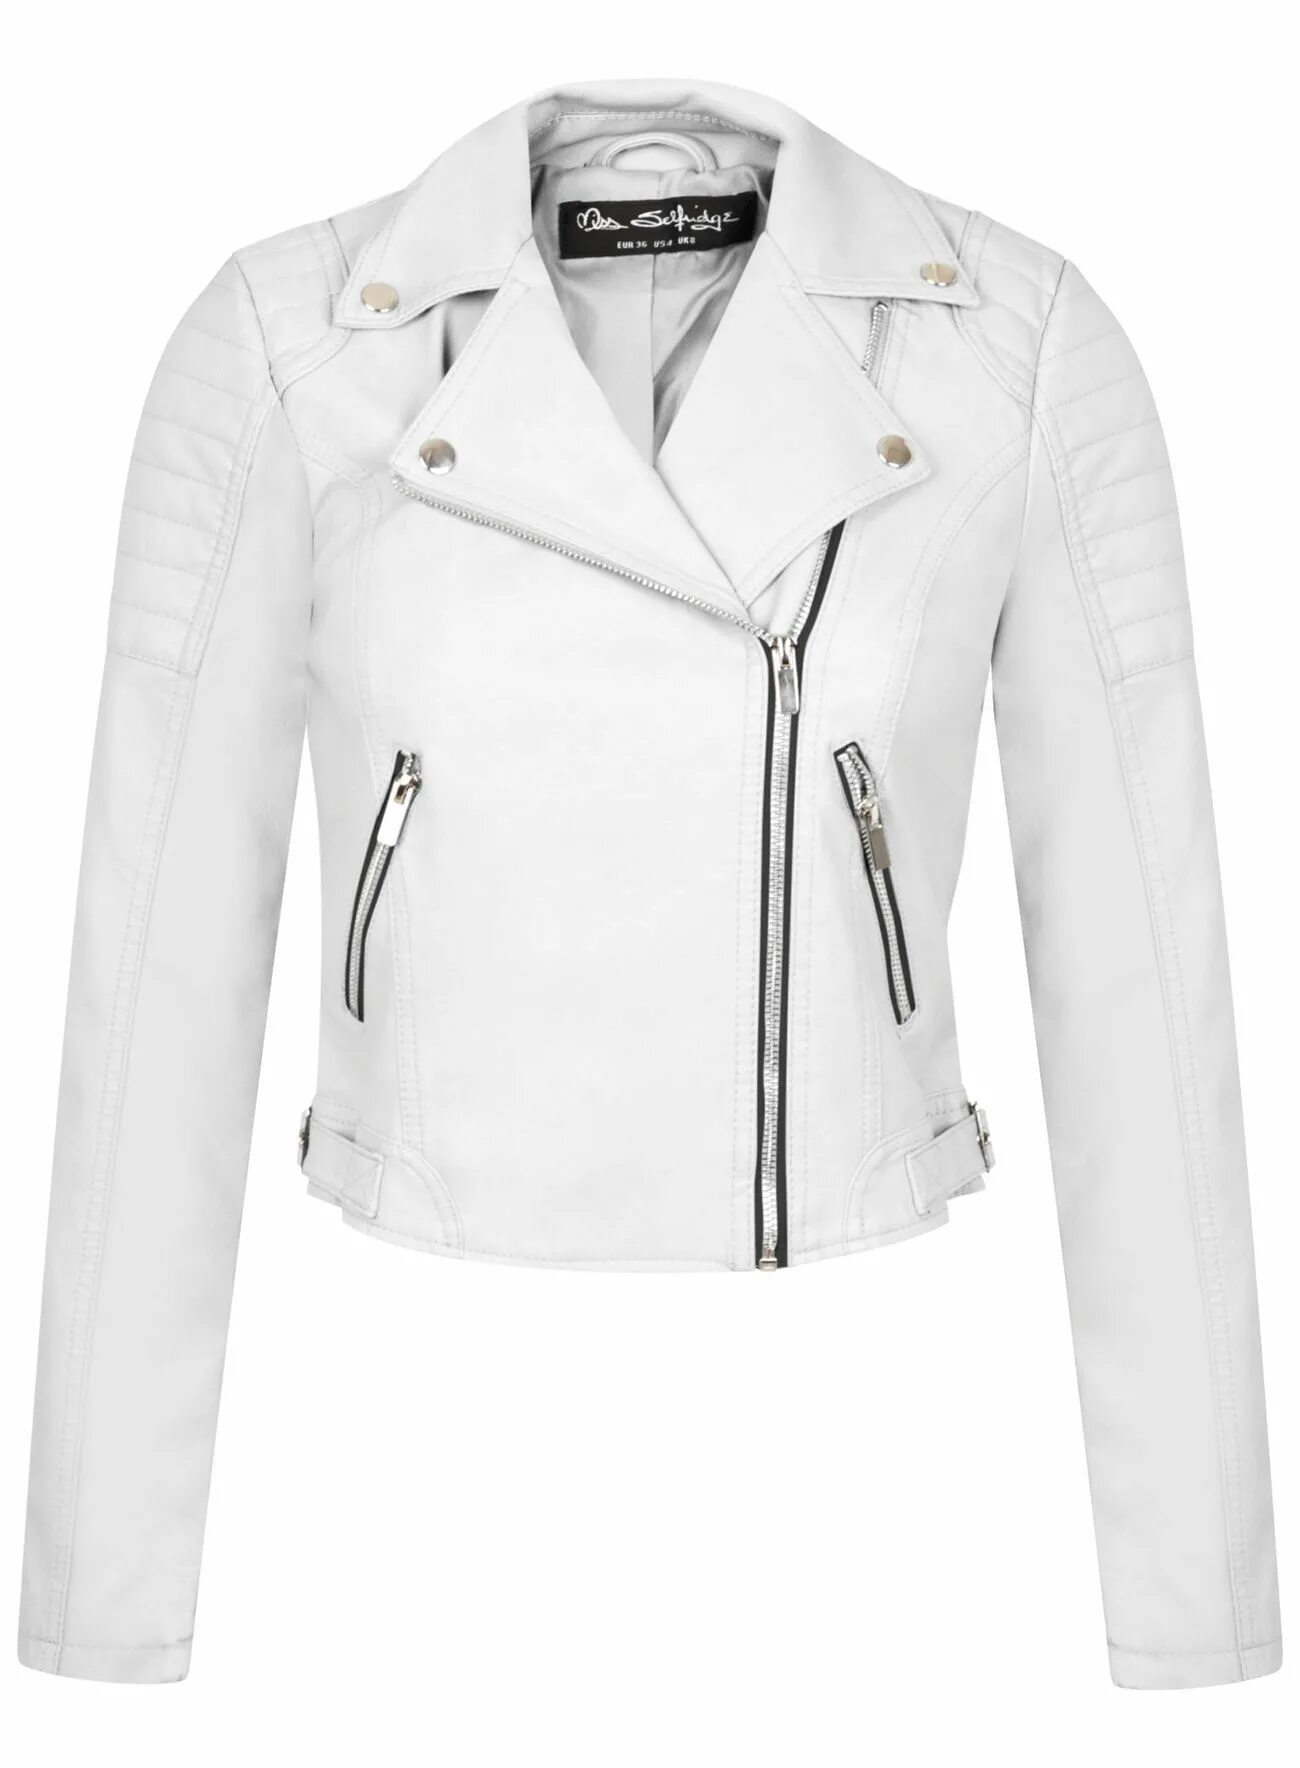 White jacket. Куртка белая кожаная Neohit. Lonsdale London белая кожаная куртка женская. Белая кожаная куртка квелли. Куртка манго белая кожаная косуха.